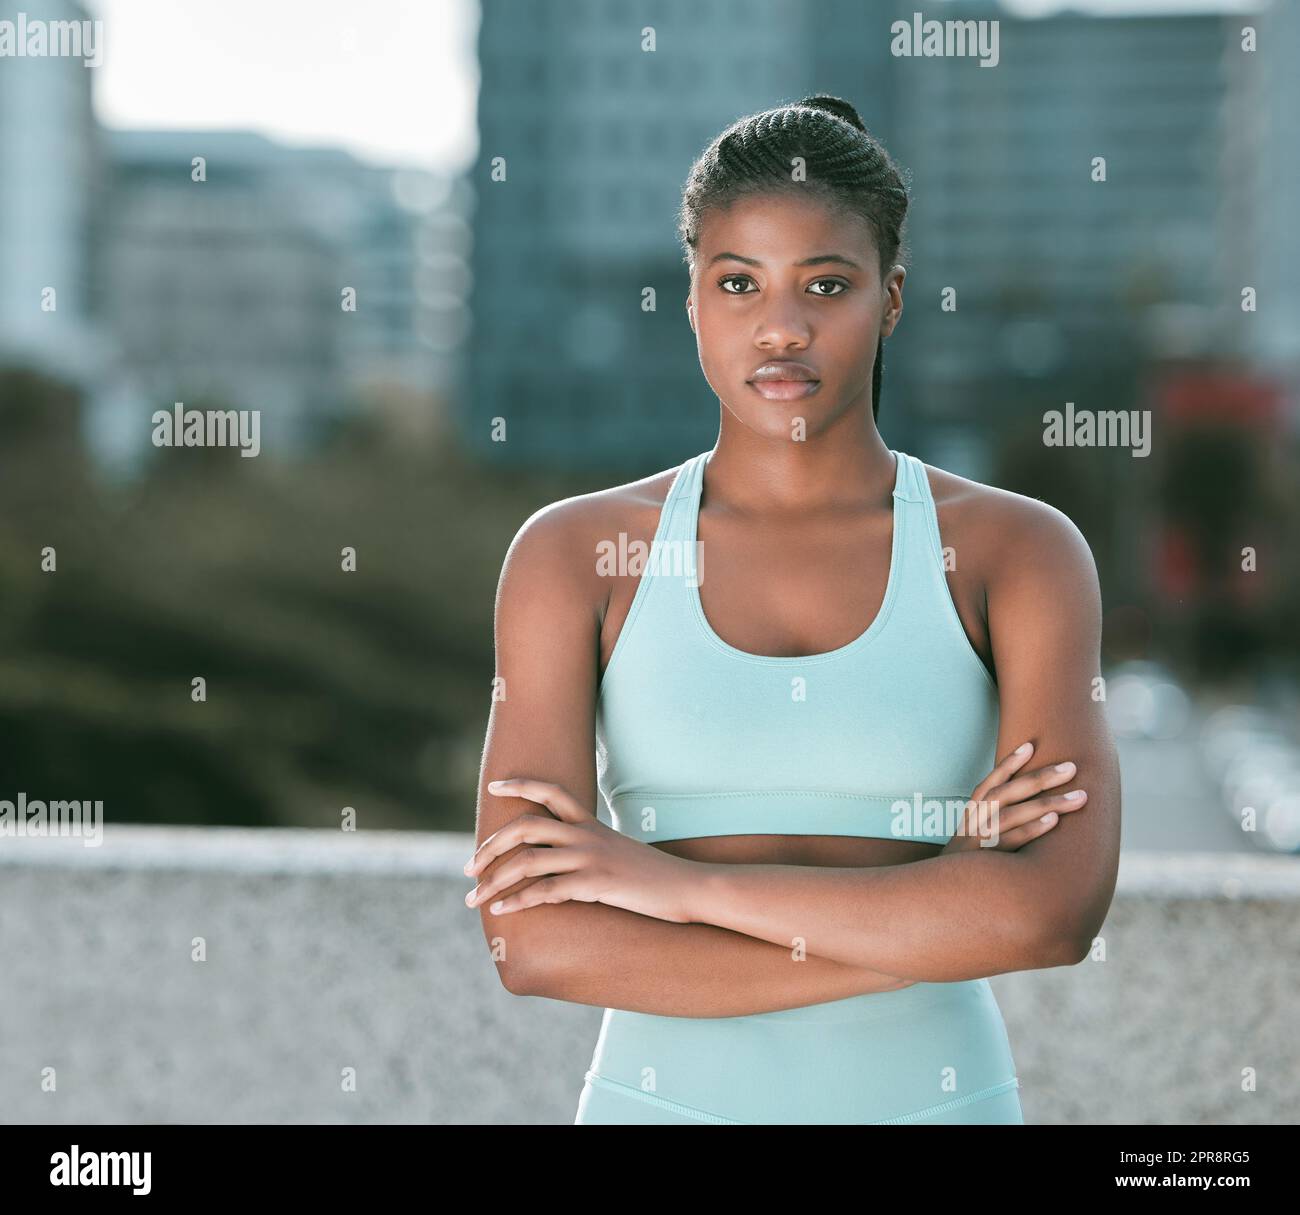 Porträt einer jungen afroamerikanischen Frau, die mit gekreuzten Armen steht, bereit für Sport im Freien. Entschlossene Sportlerin, die fokussiert und motiviert für das Training in der Stadt aussieht Stockfoto